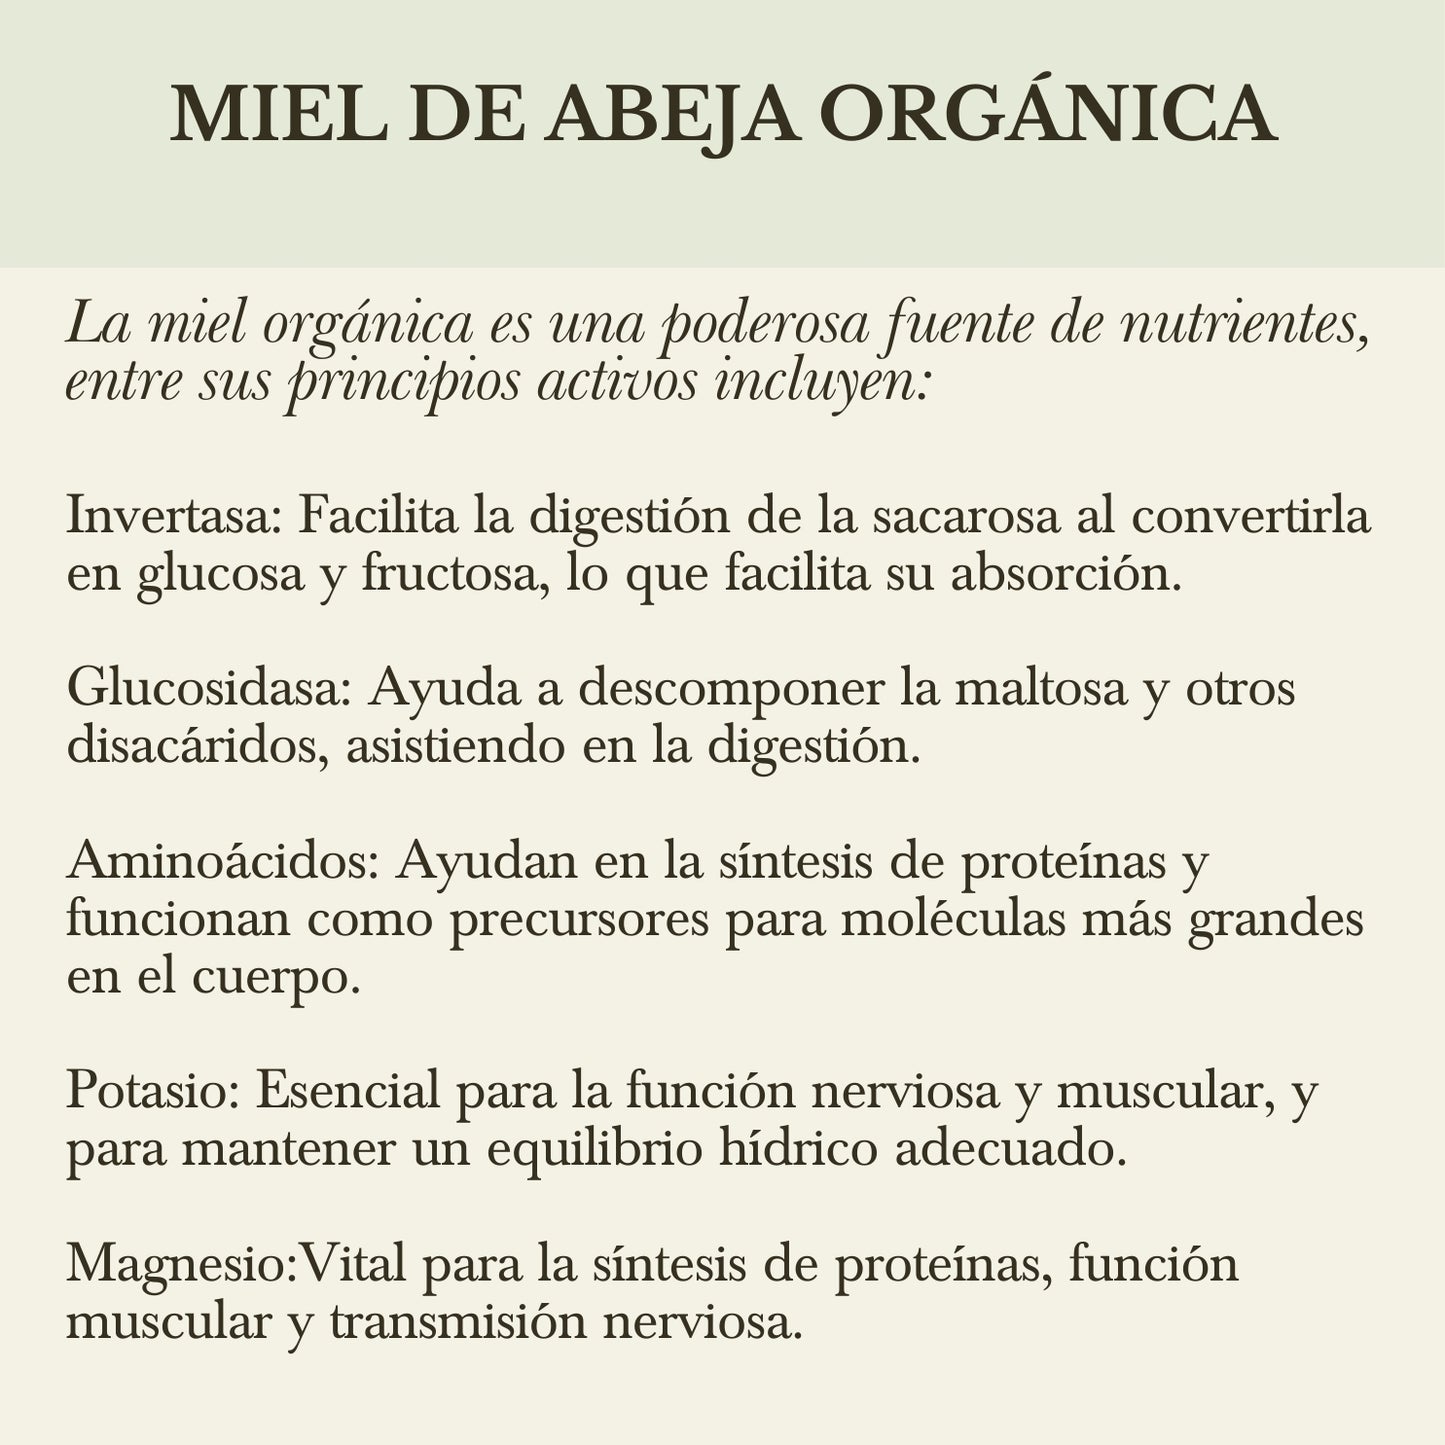 x. MIEL DE MEZQUITE ORGÁNICA